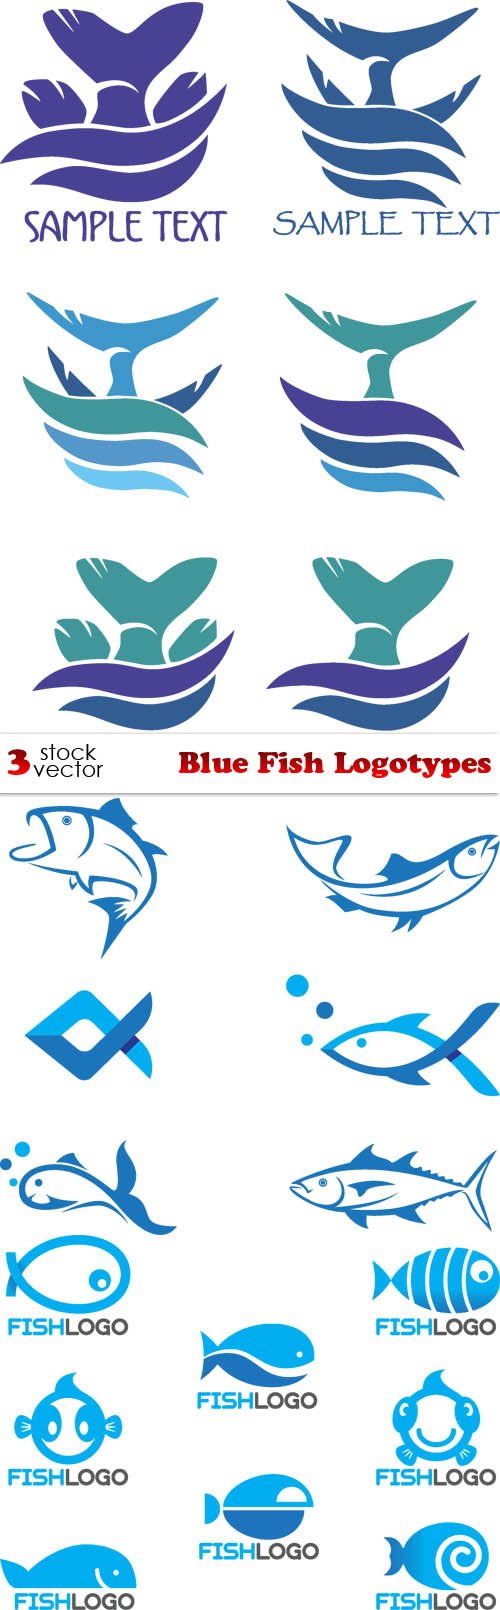 Vectors - Blue Fish Logotypes